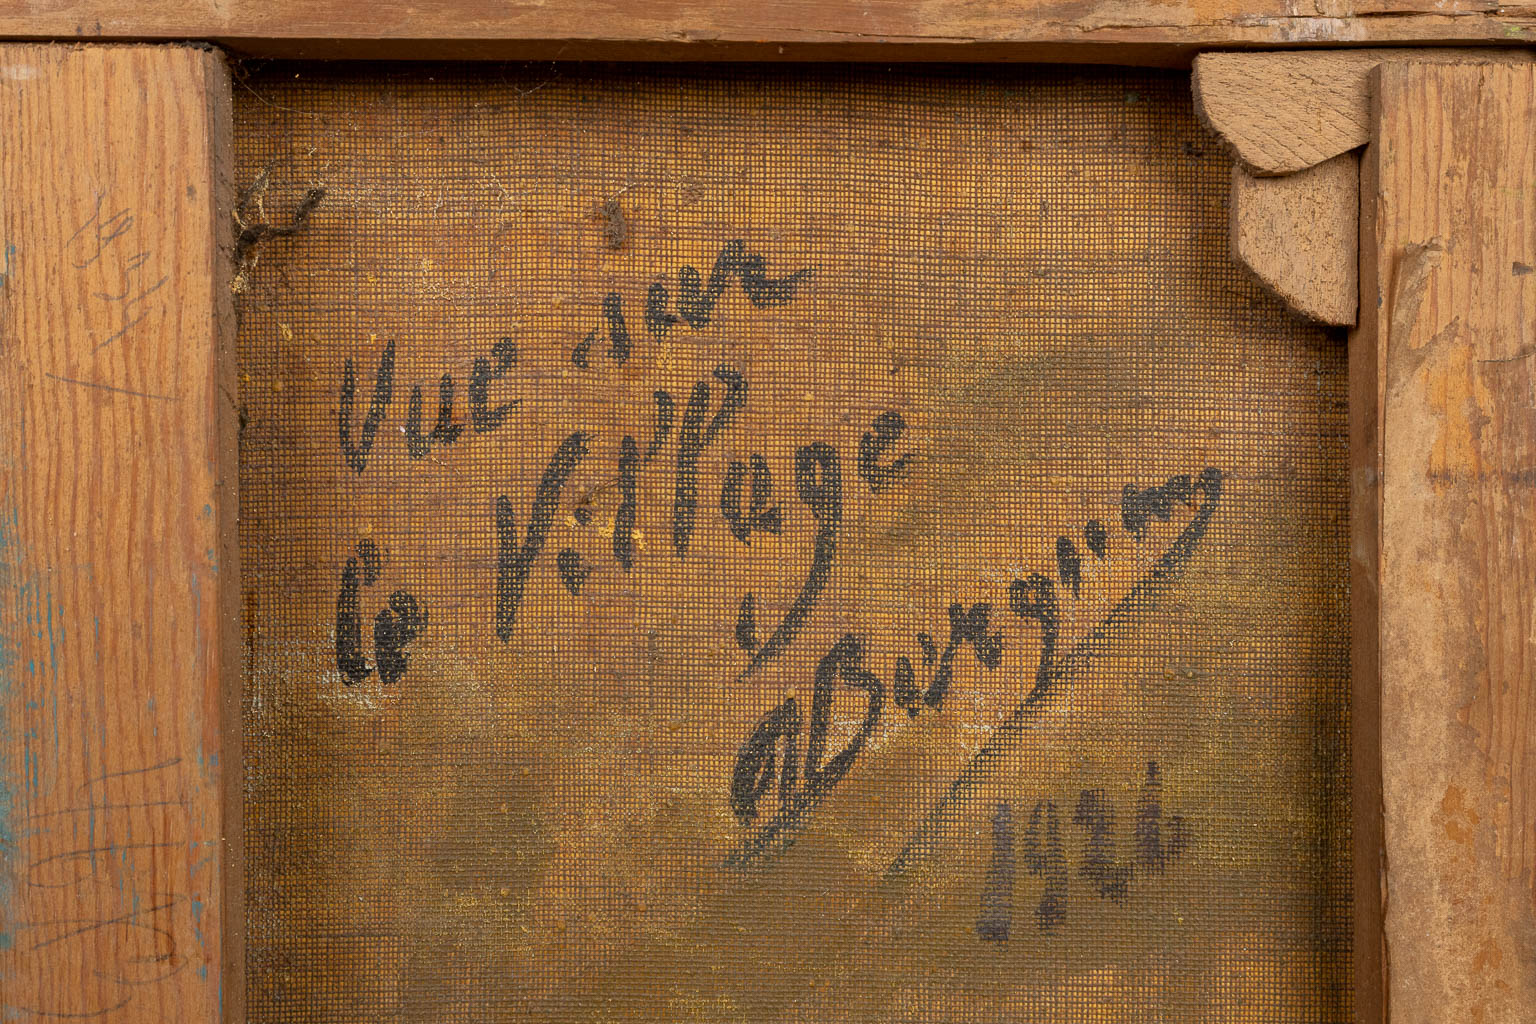 R. BERQUIN (XIX-XX) 'Vue sur le village', een schilderij, olie op doek. 1926. (47 x 37 cm)